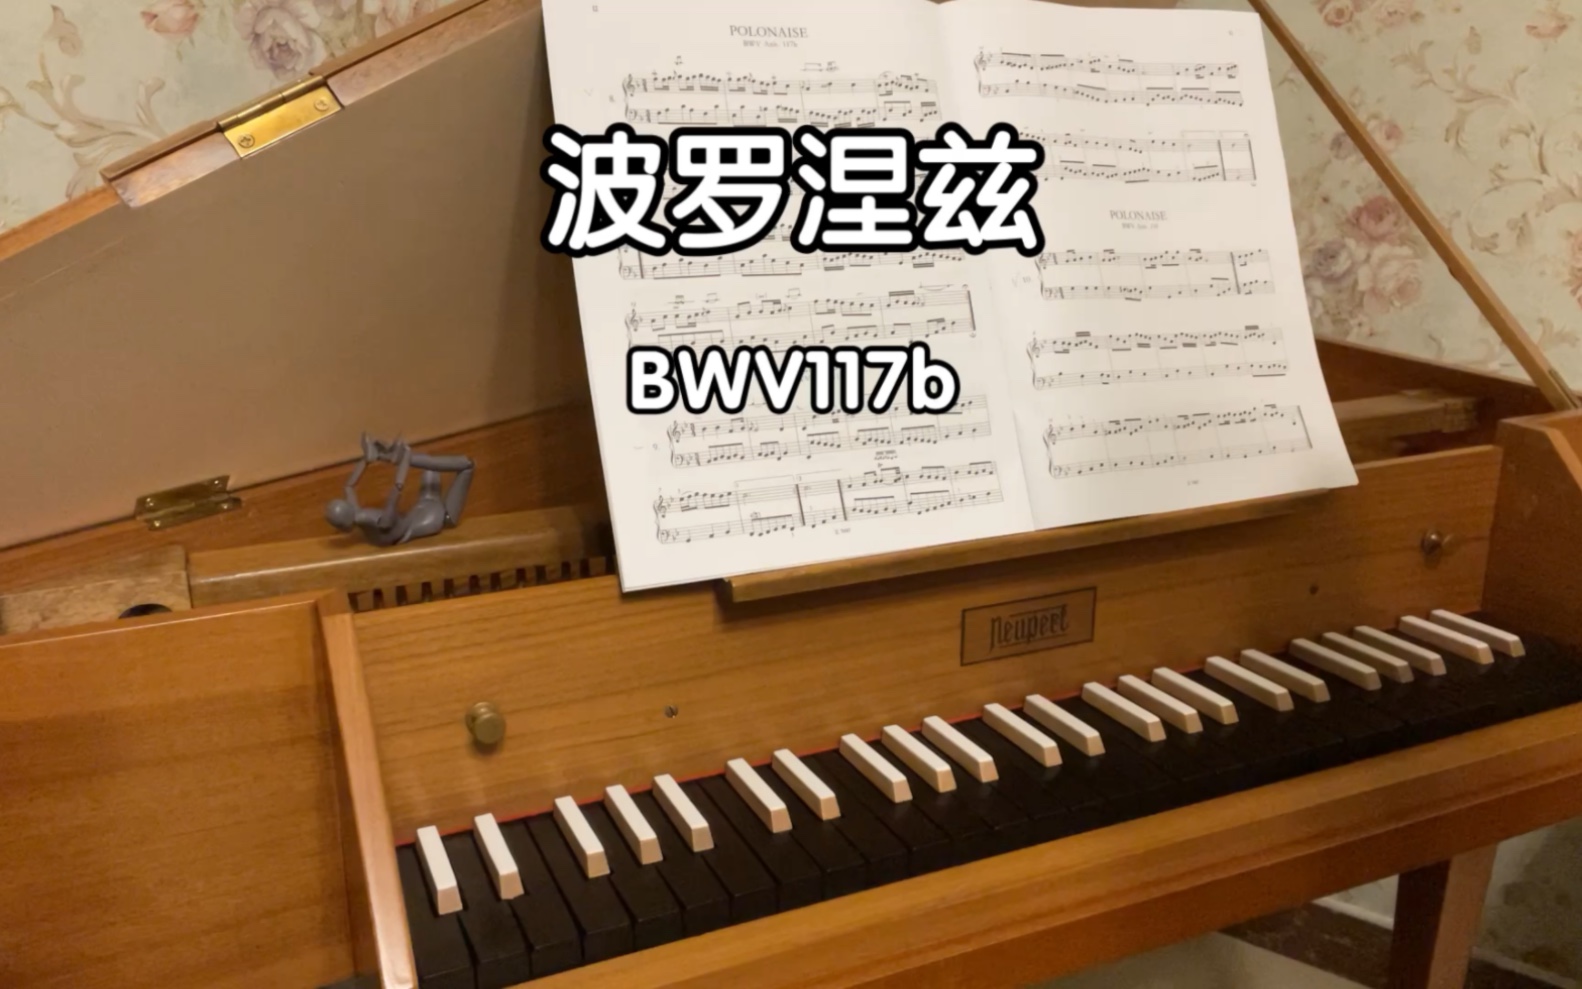 [图]波罗涅兹 BWV117b